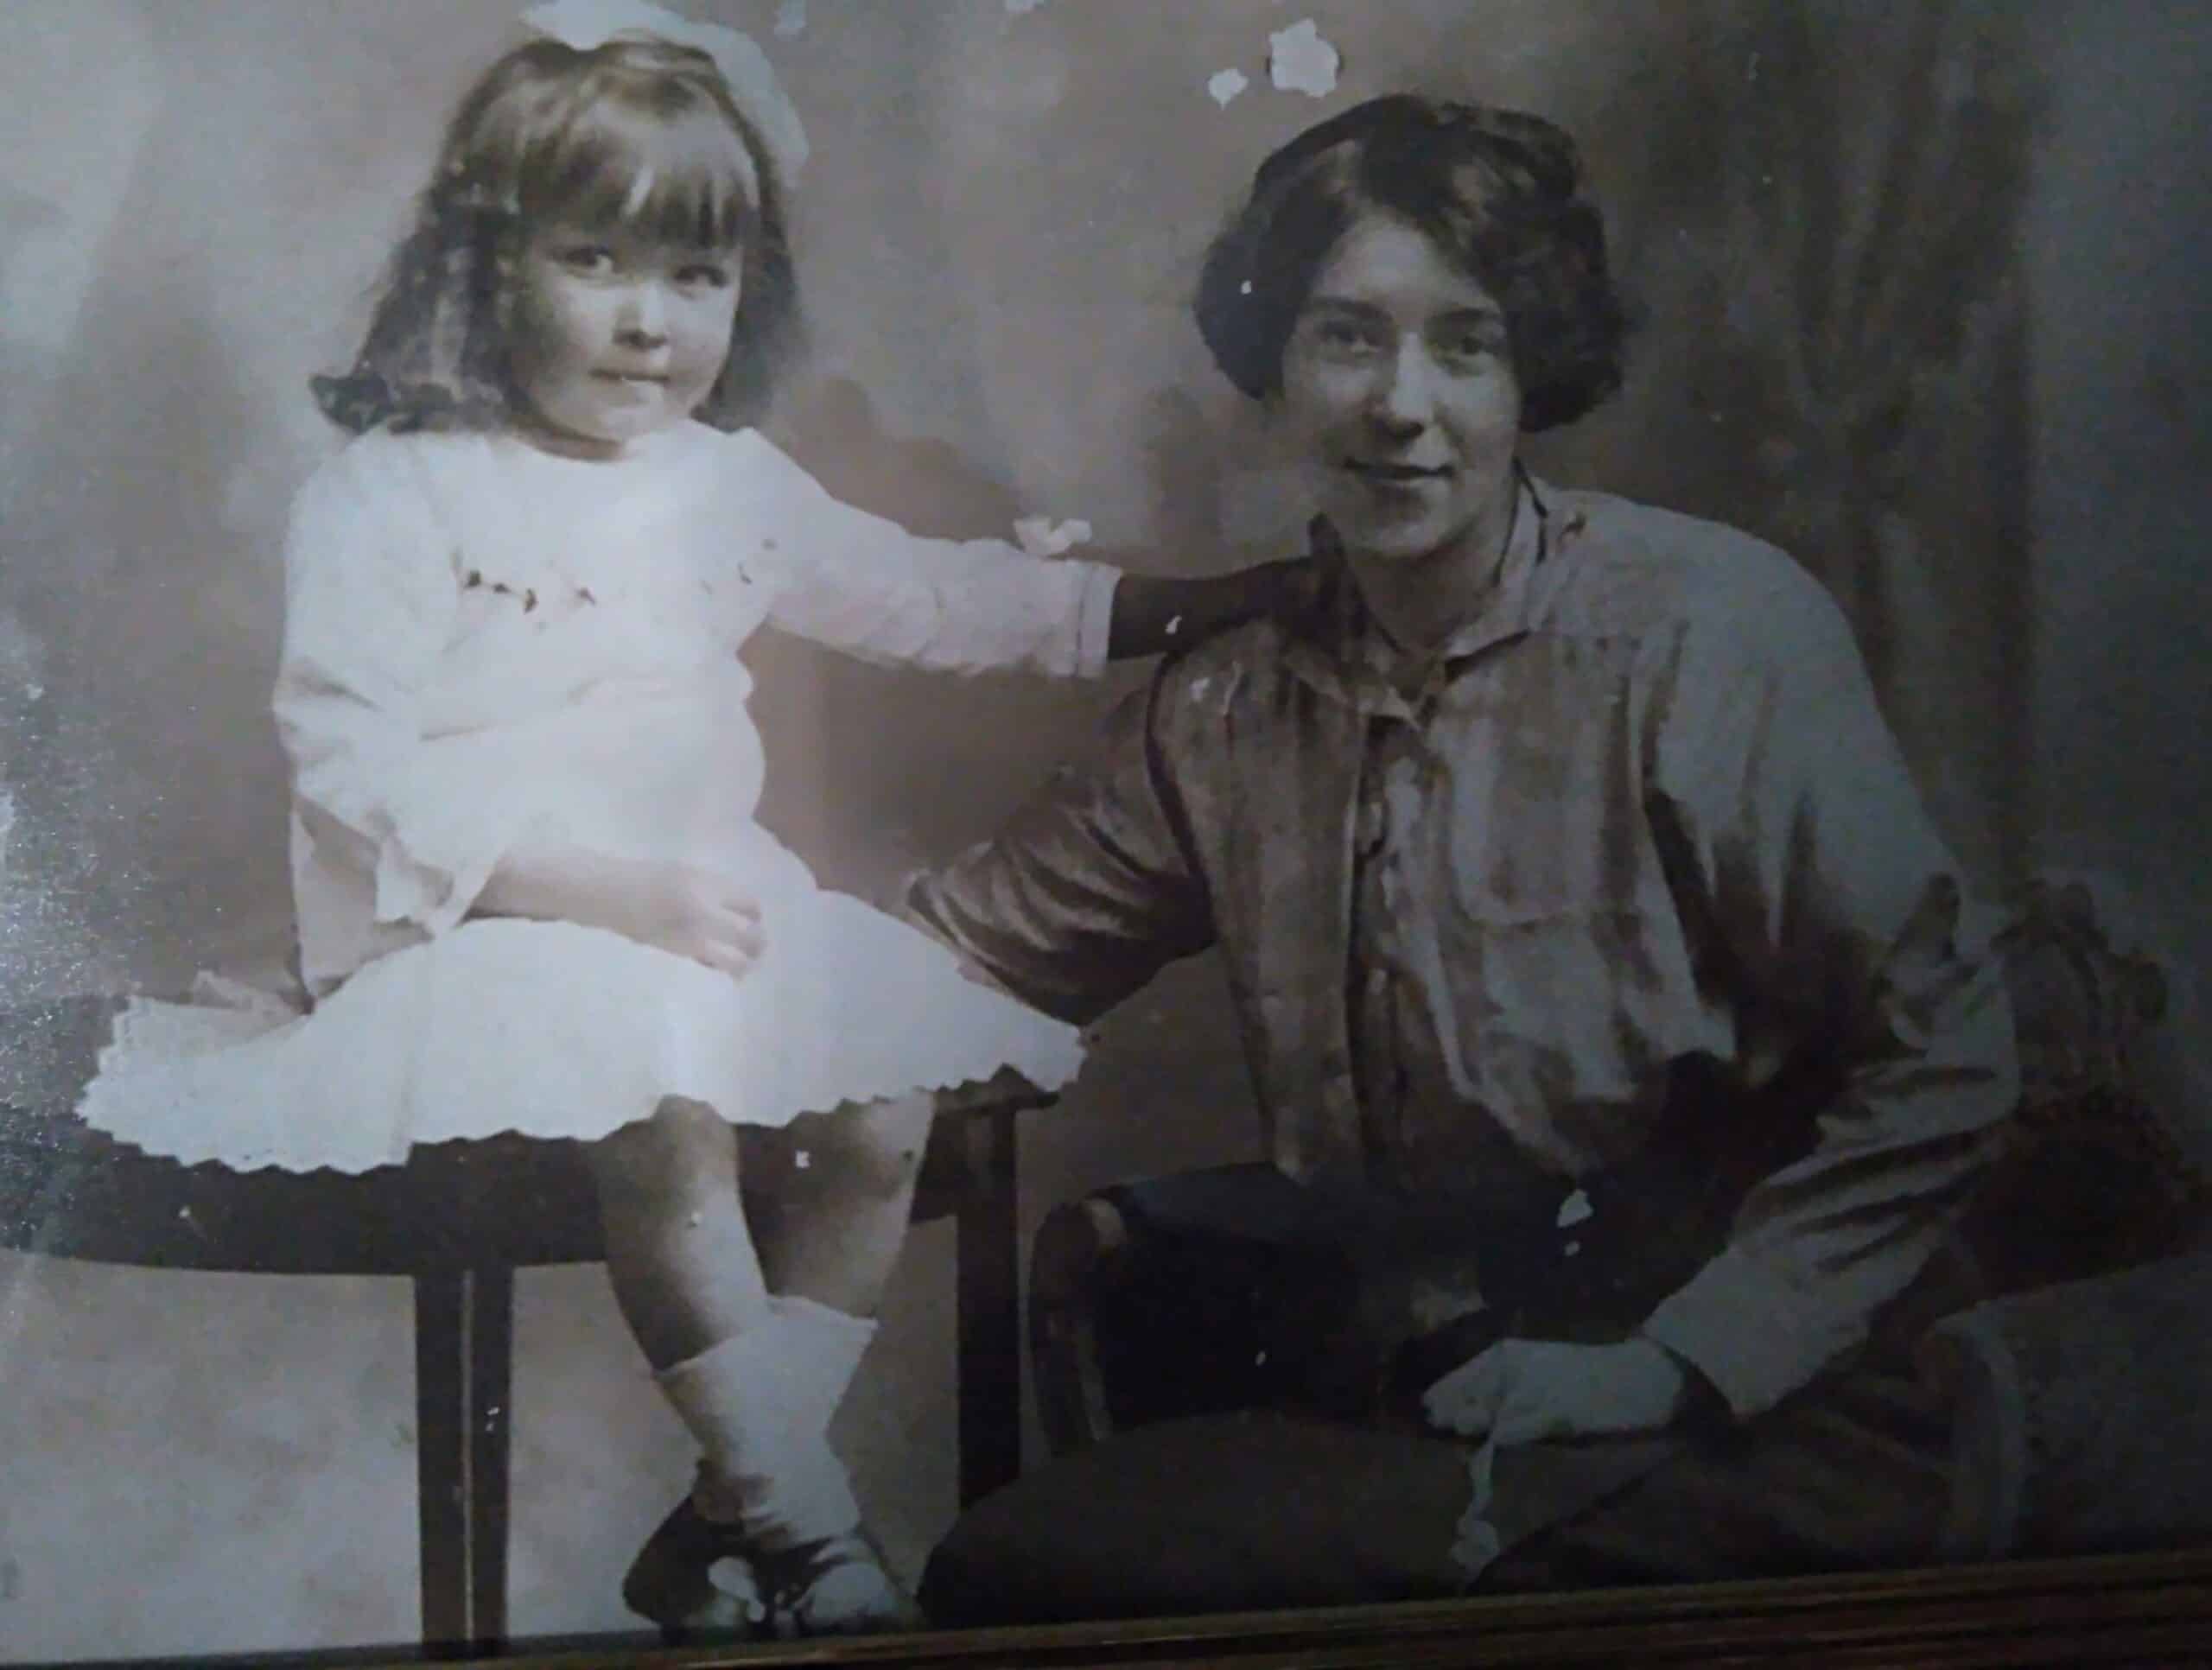 Julie Mamos gammelmormor (höger) med Julies mormor som ung flicka. Fotot är färglagt och förbättrat av MyHeritage